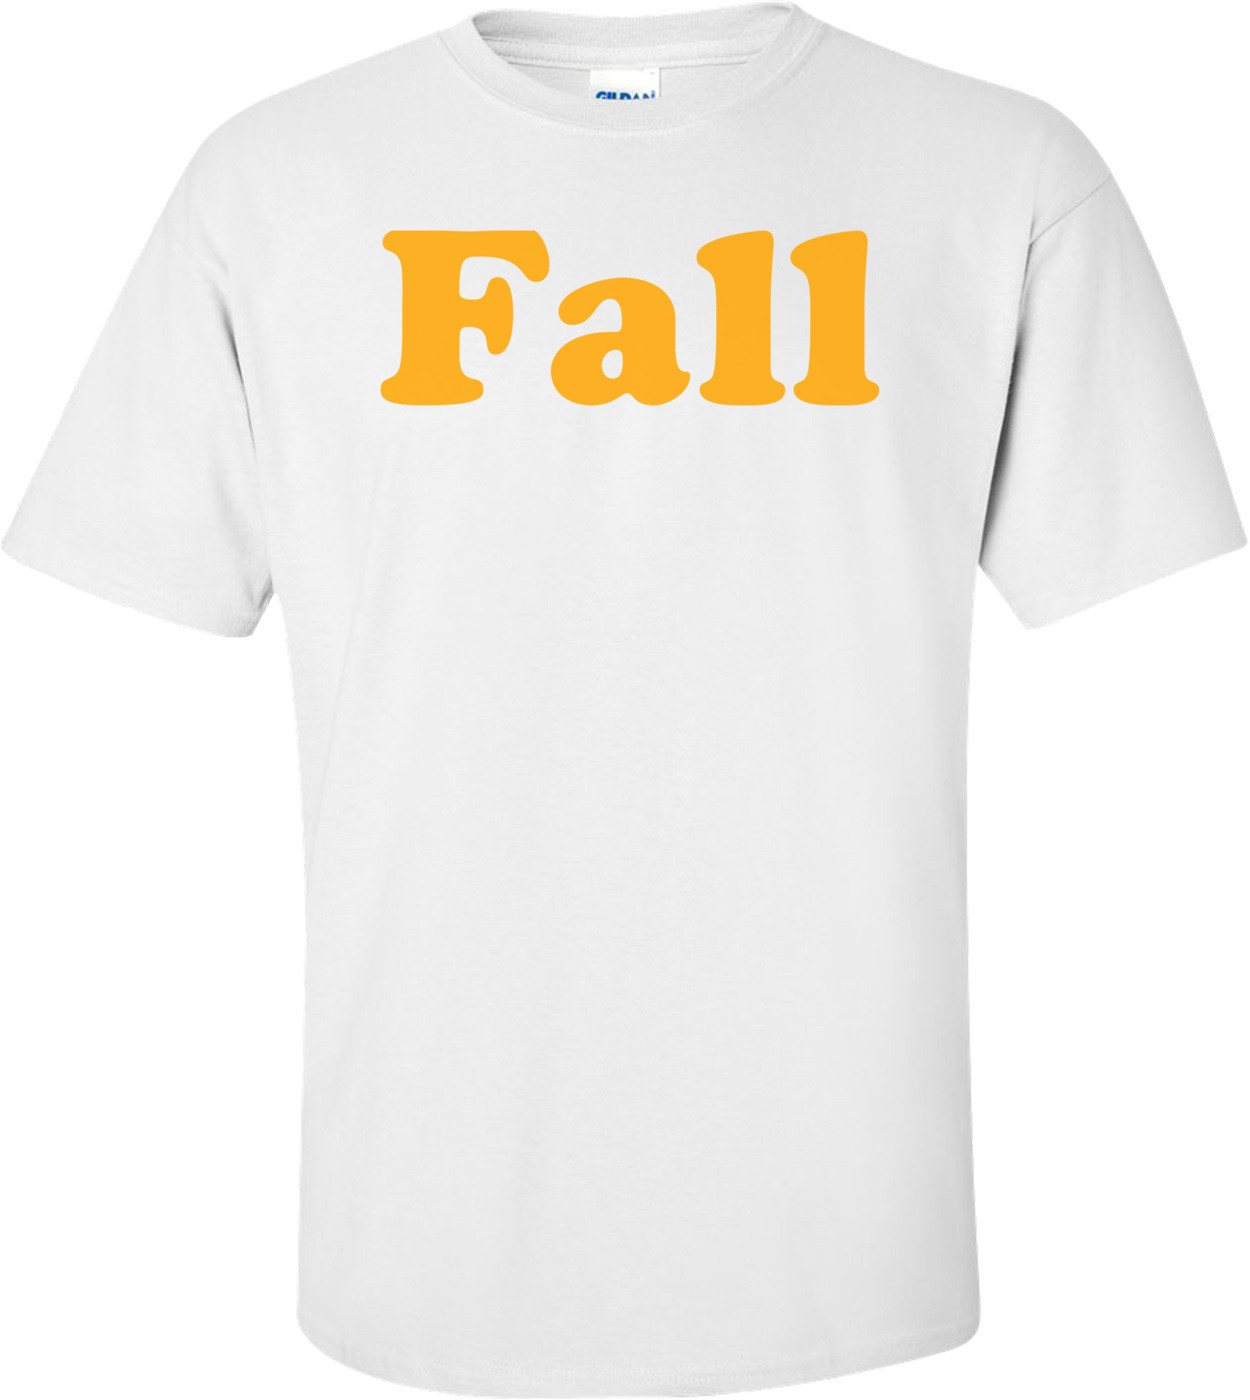 Fall - Maternity Shirt